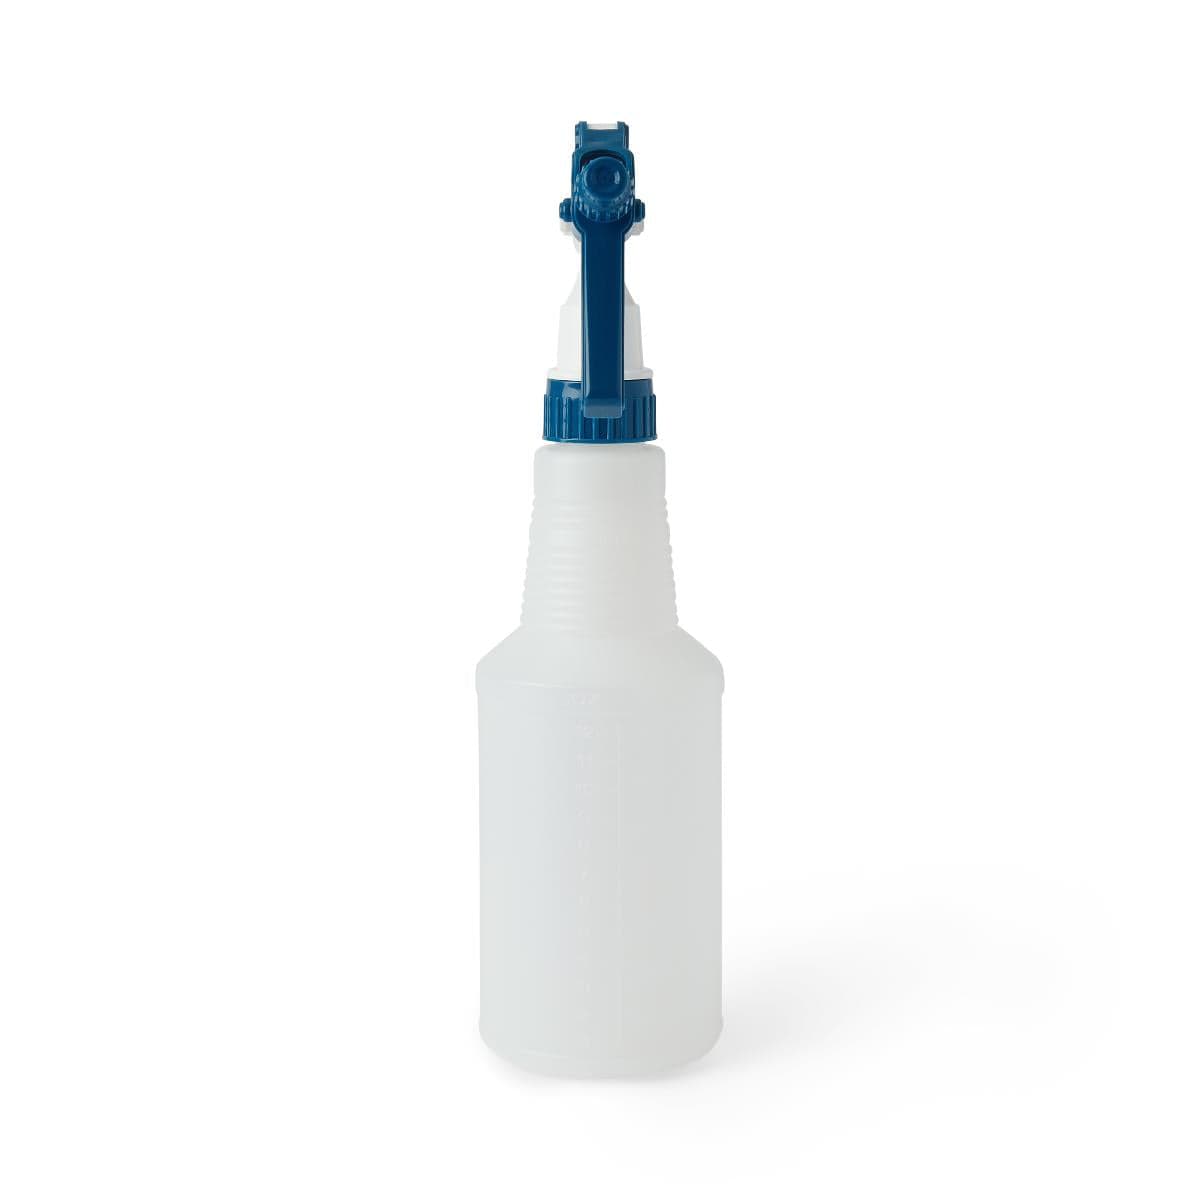 Medline Medline Bottle with Trigger Sprayer EVS5016